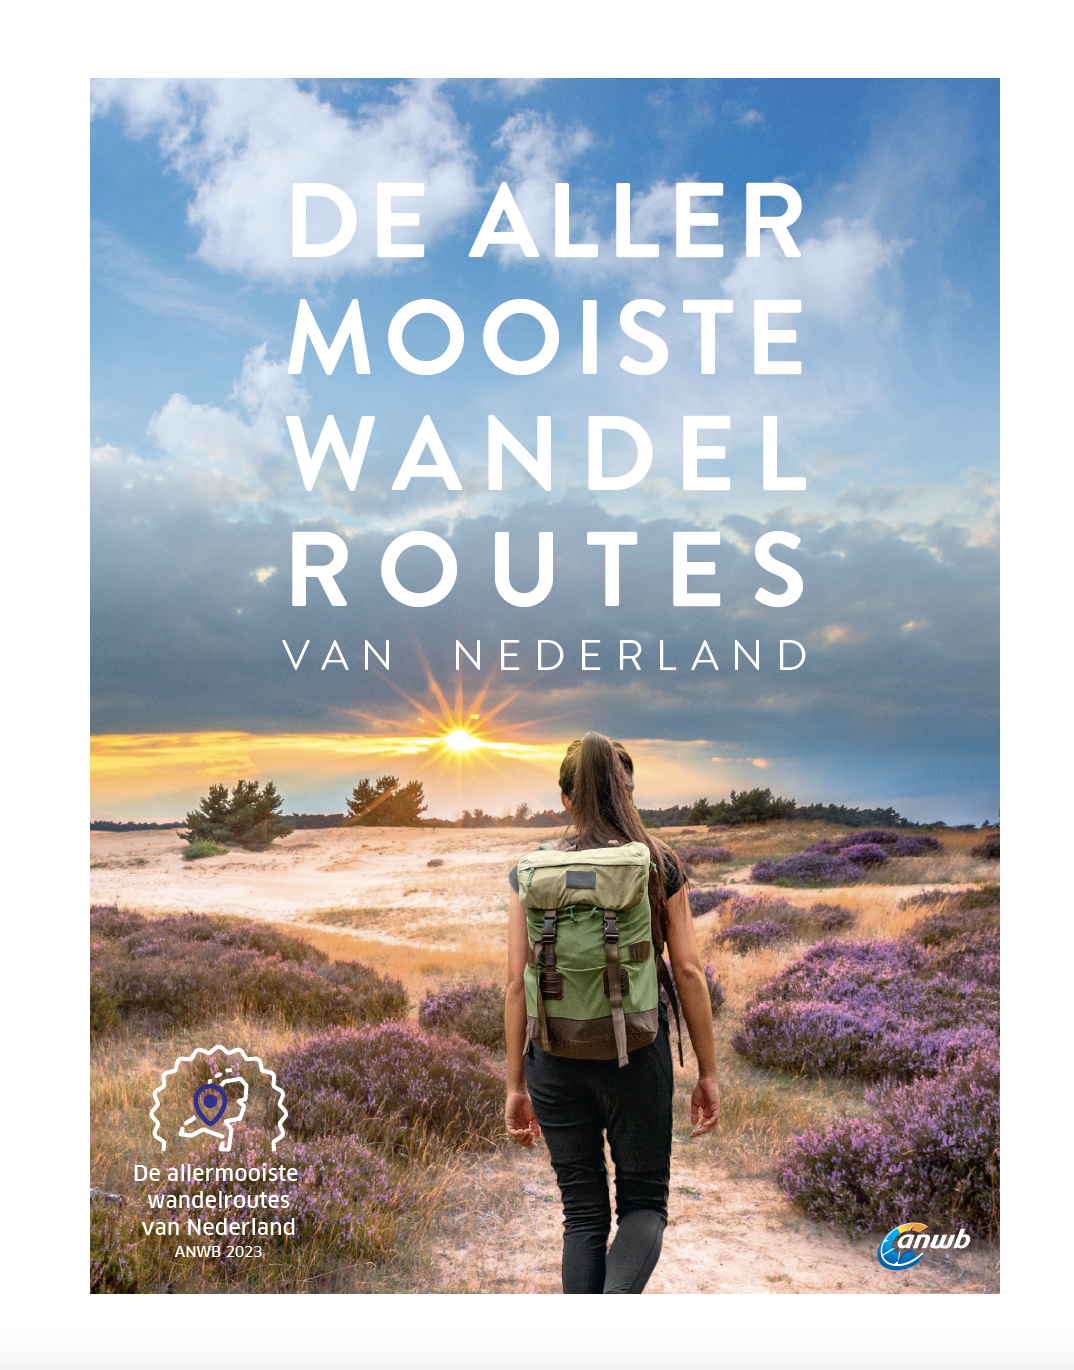 De allermooiste wandelroutes van Nederland (ANWB)